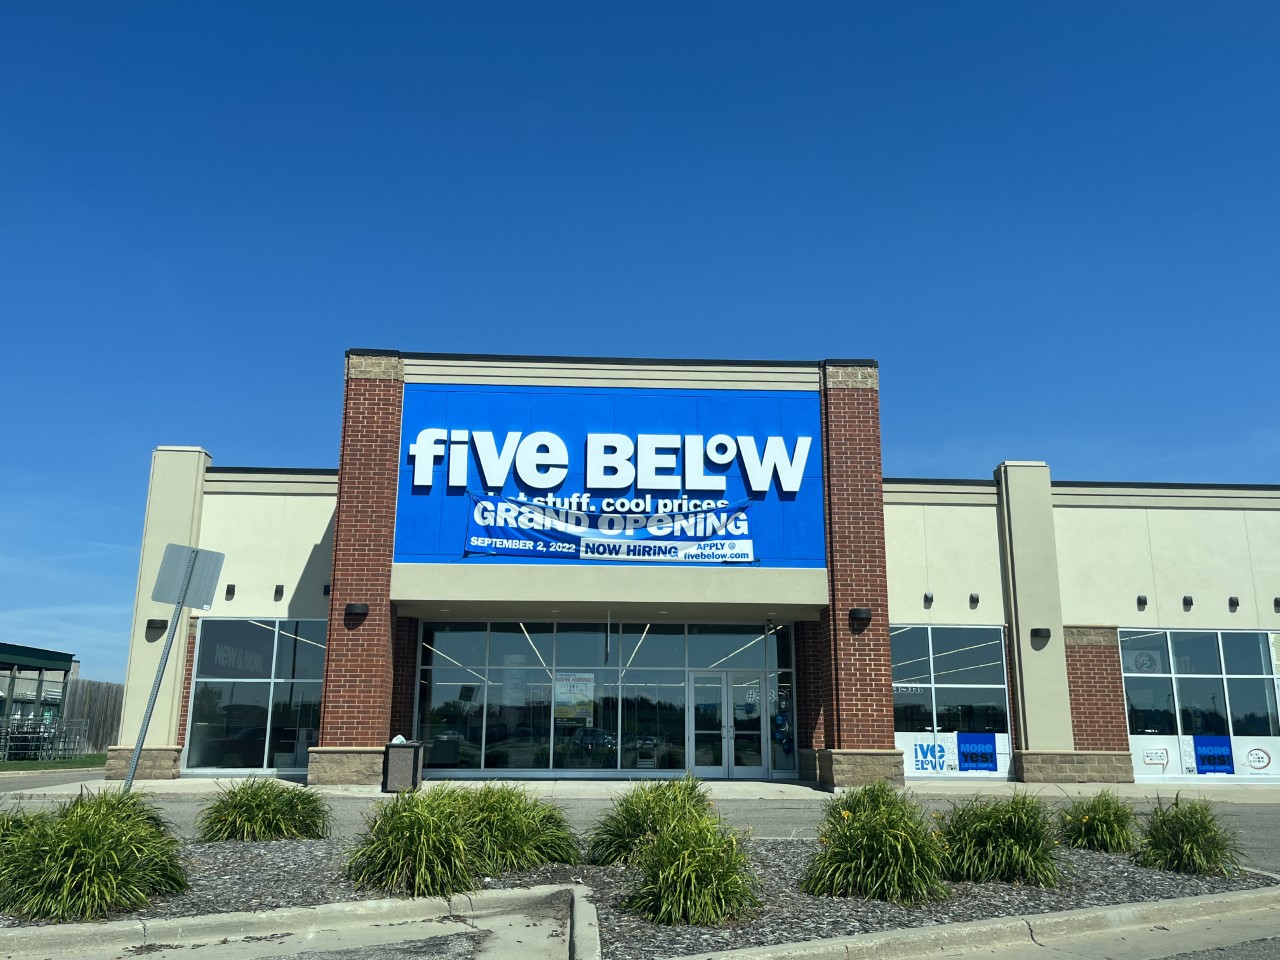 Five Below in Fargo to open September 2